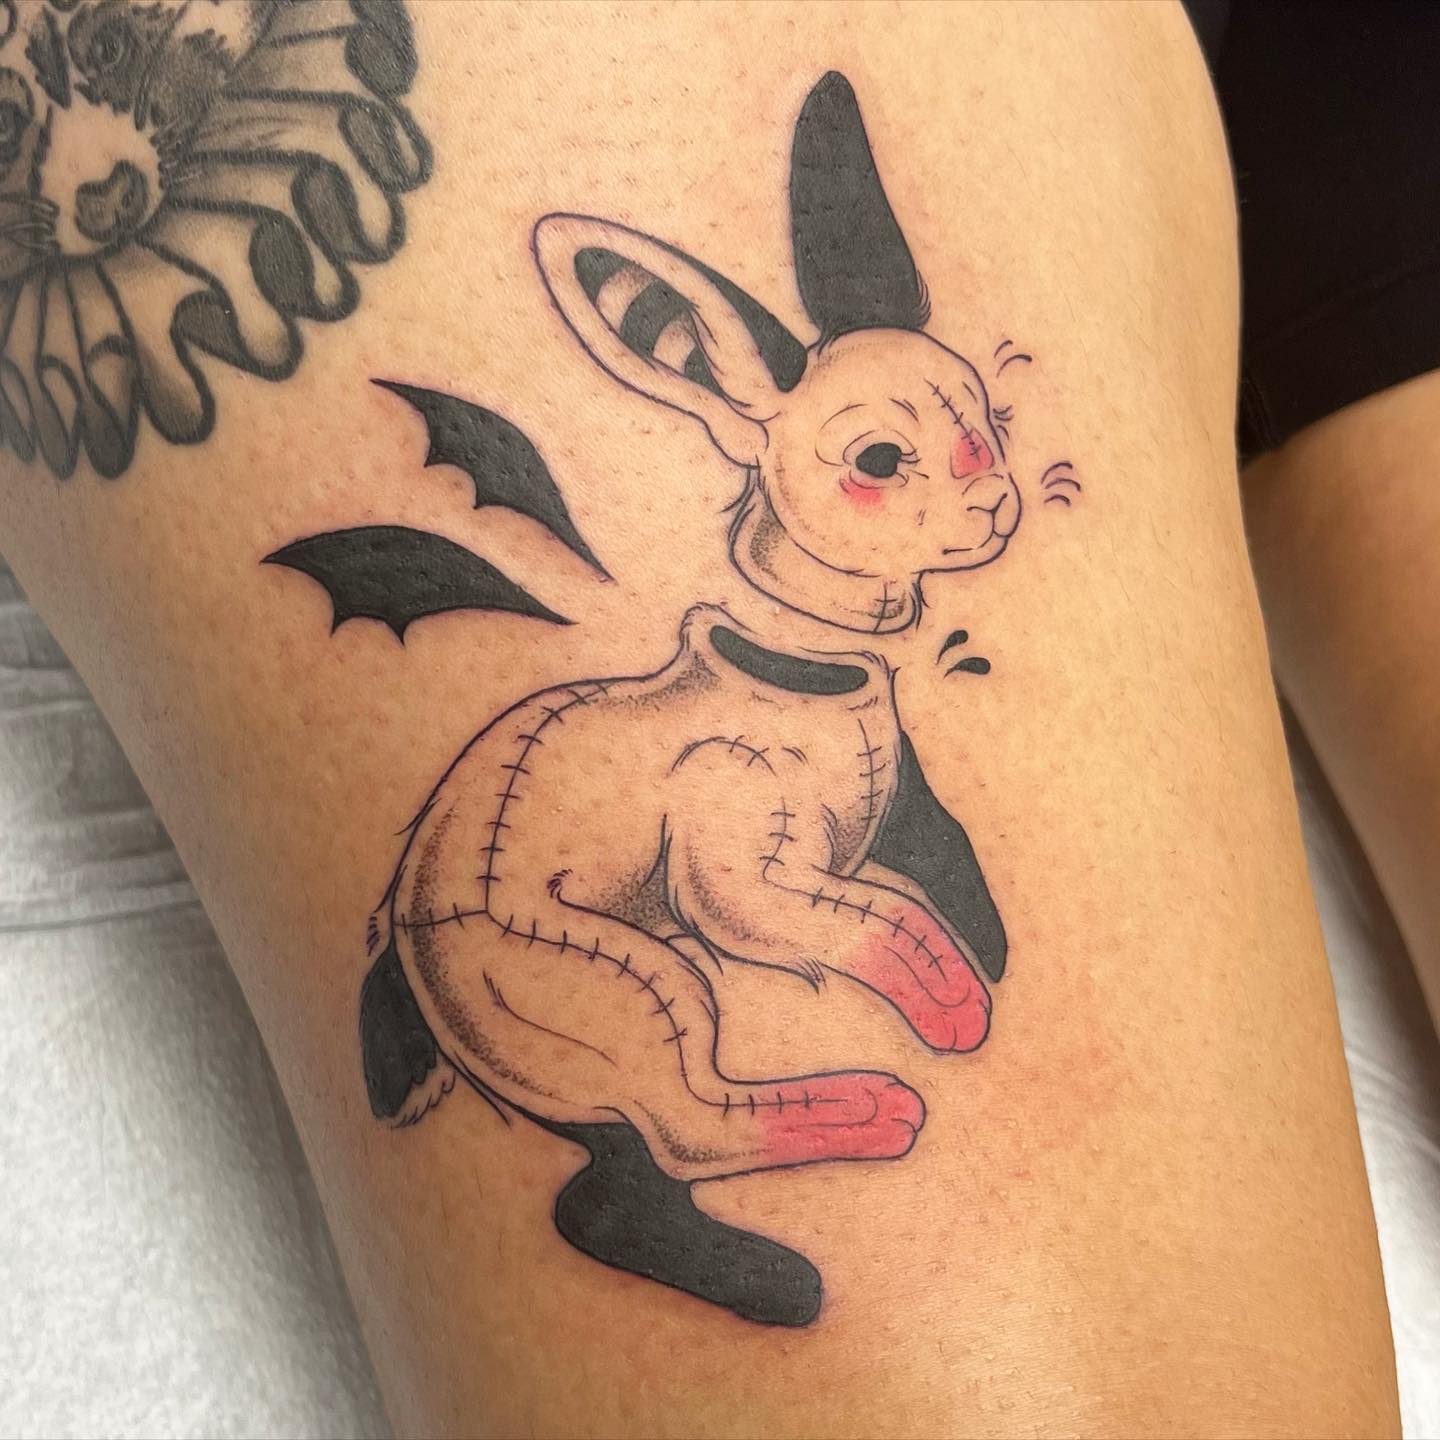 Bunny tattoos for the win #Tattoo #TattooArtist #tattootok #TattooInsp... |  TikTok